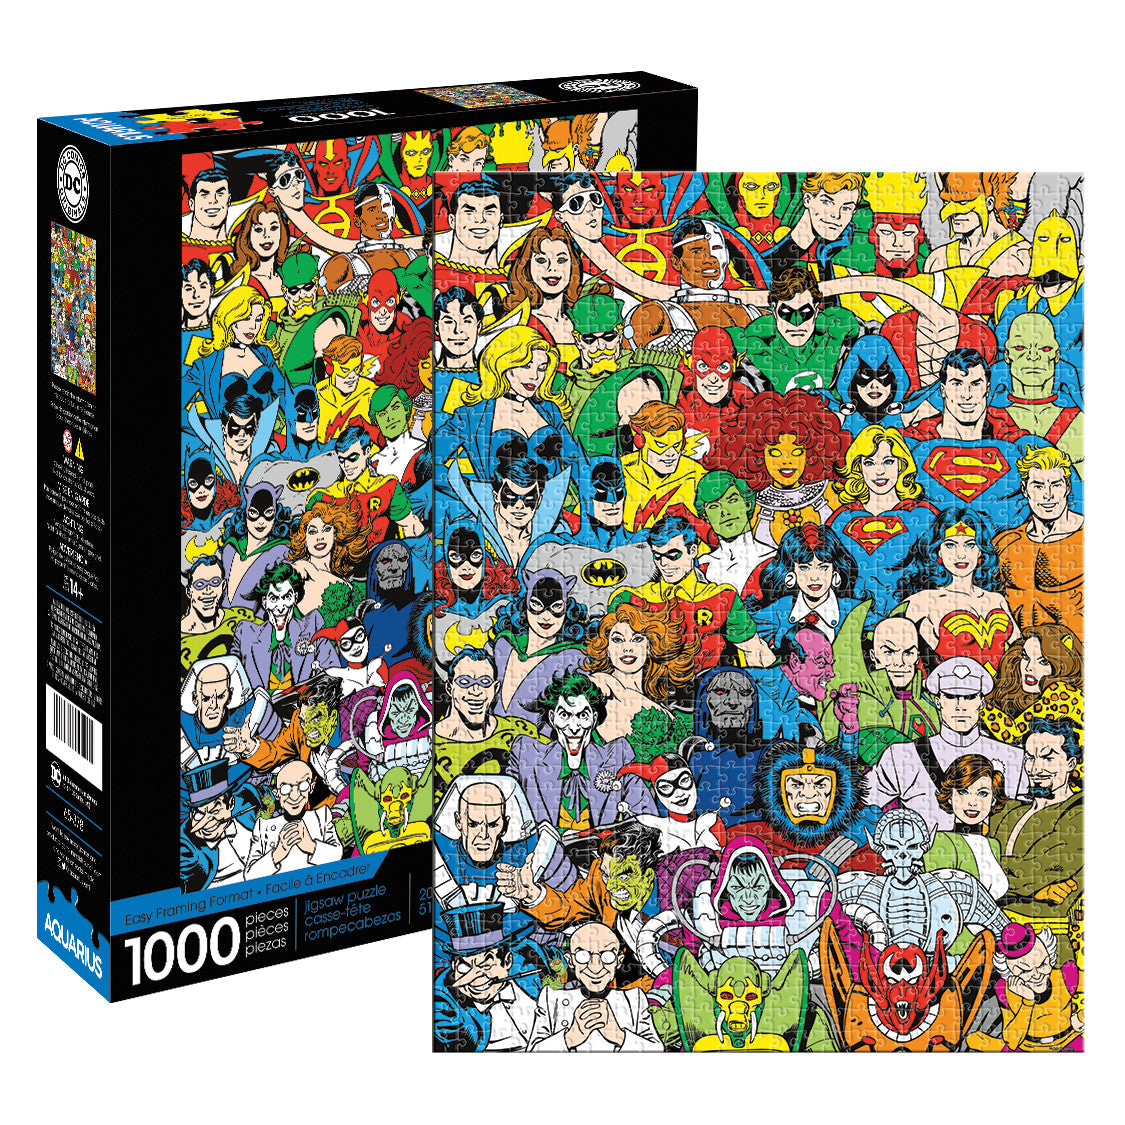 Aquarius Puzzle DC Comics Retro Cast Puzzle 1,000 pieces